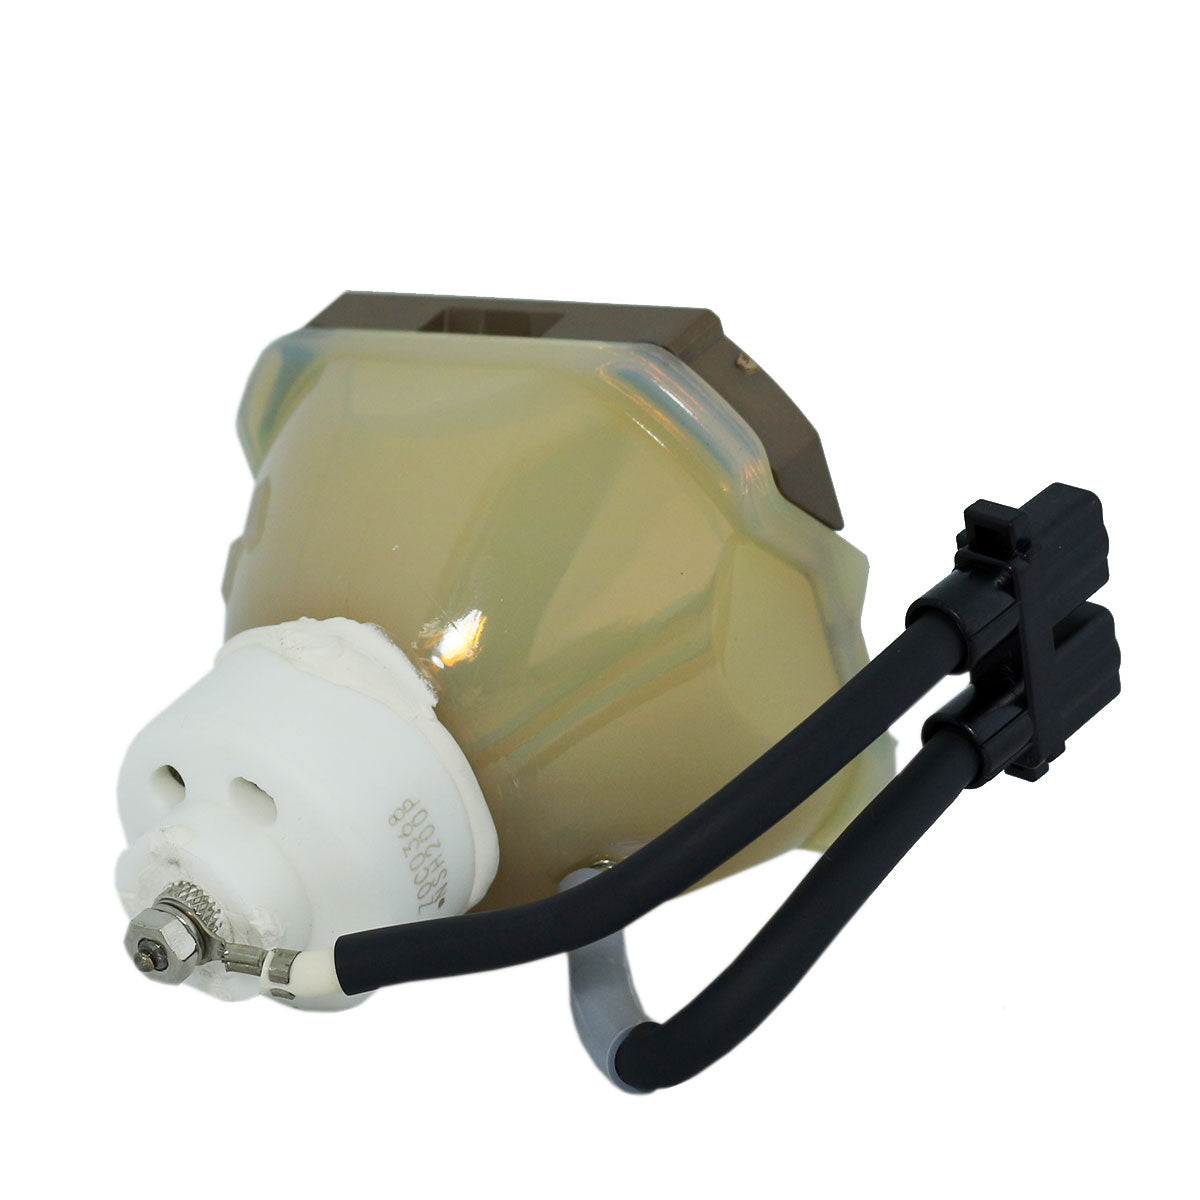 3M 78-6969-9464-5 Ushio Projector Bare Lamp